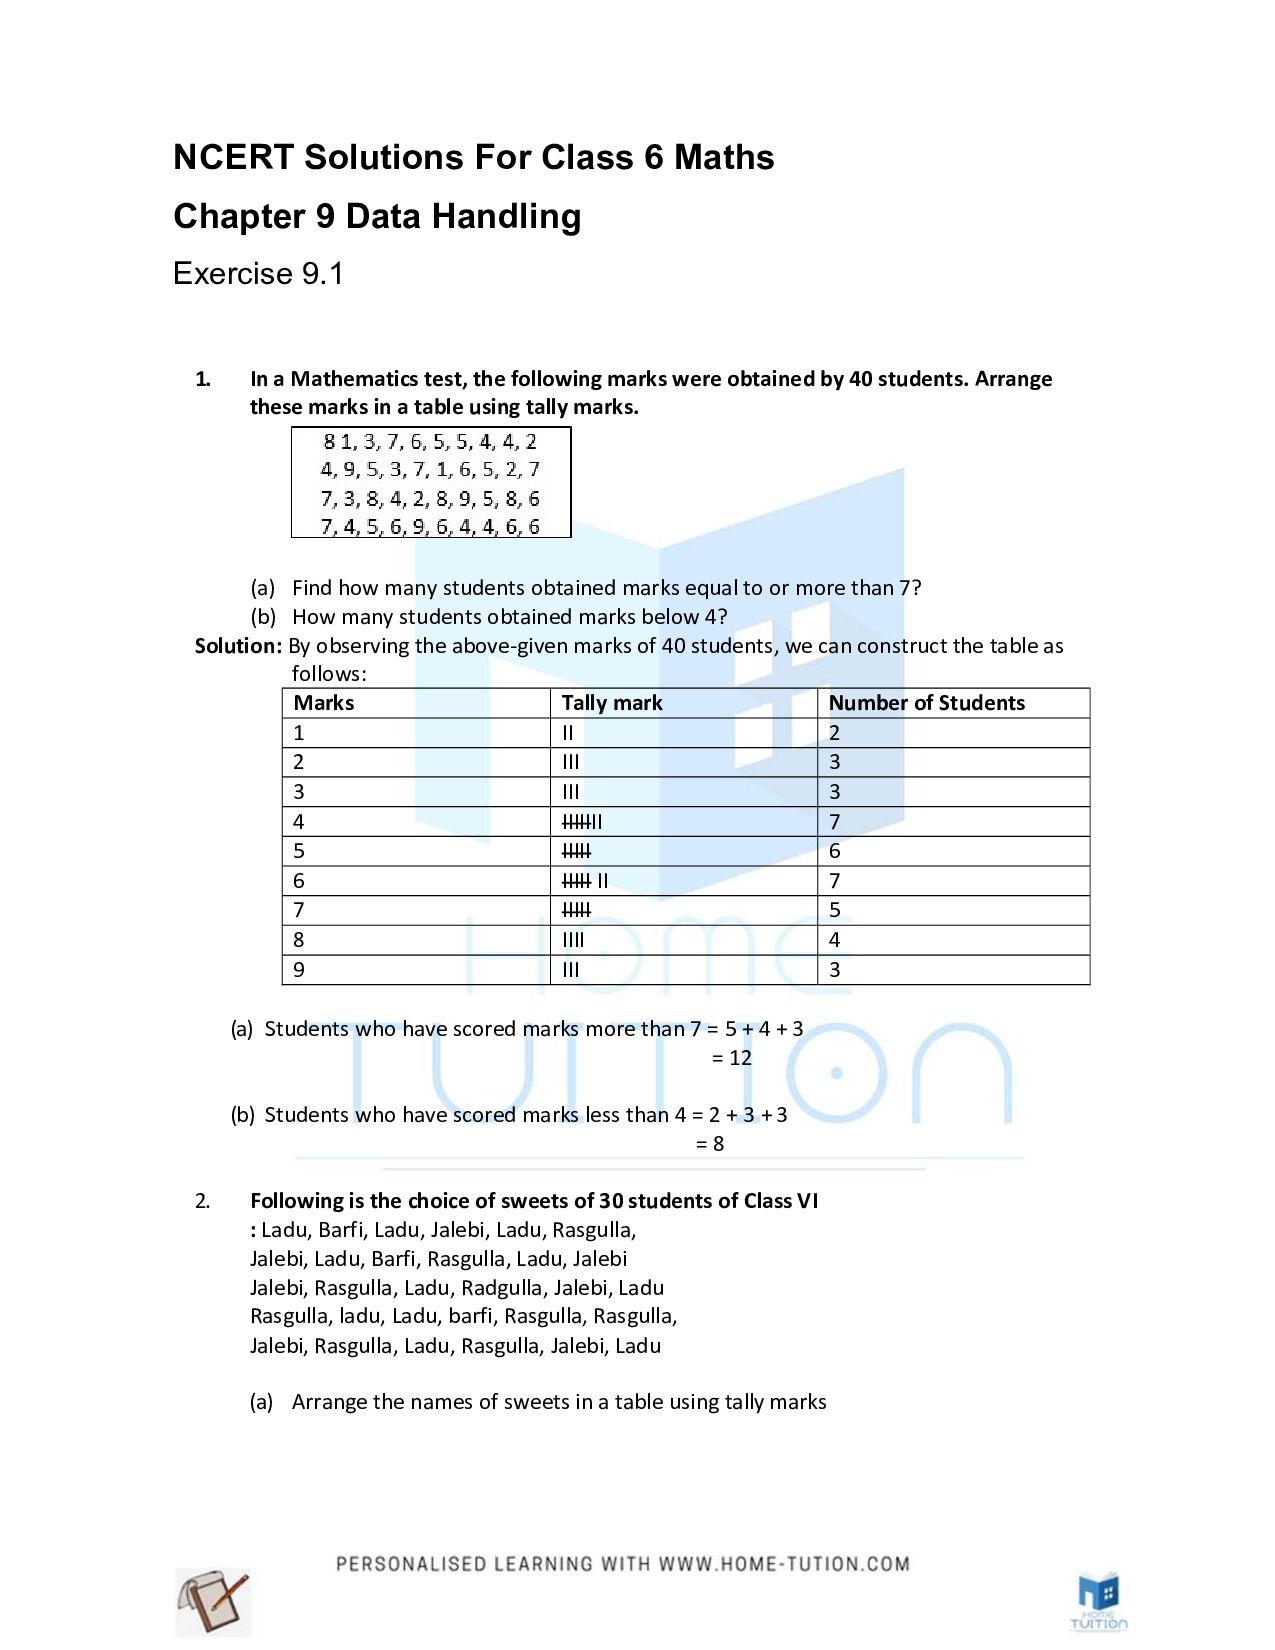 Class 6 Maths Chapter 9 Data Handling